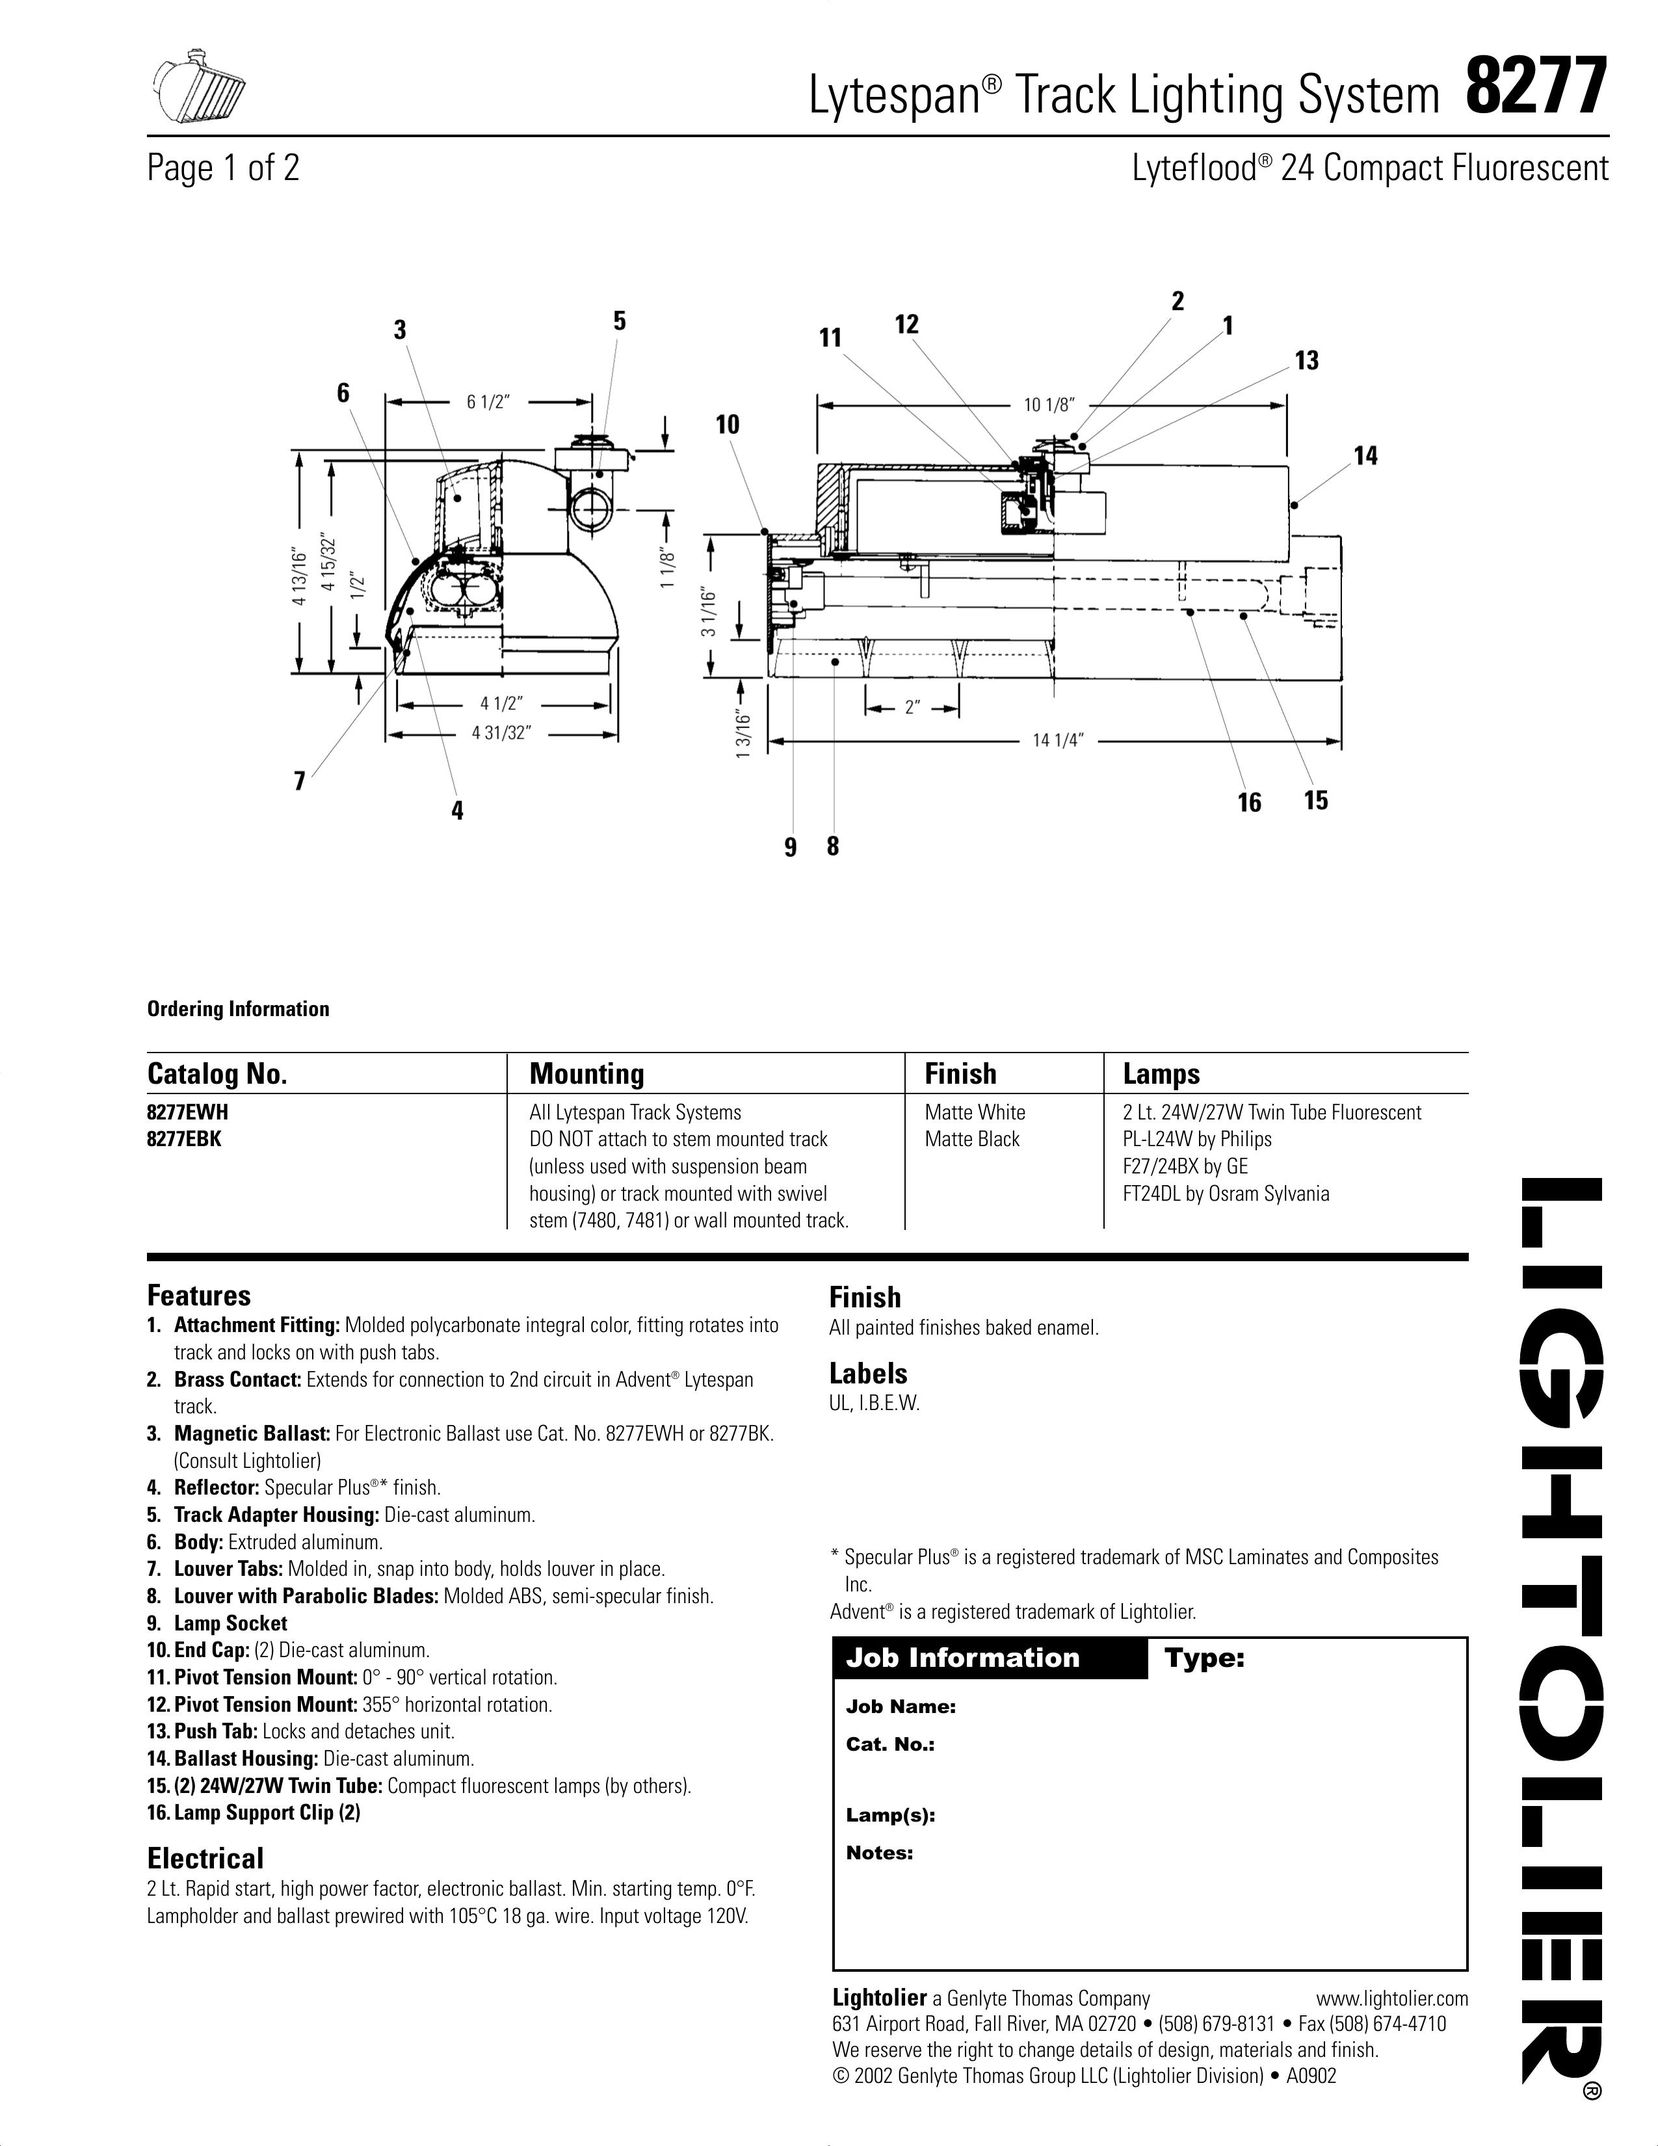 Lightolier 8277 Work Light User Manual